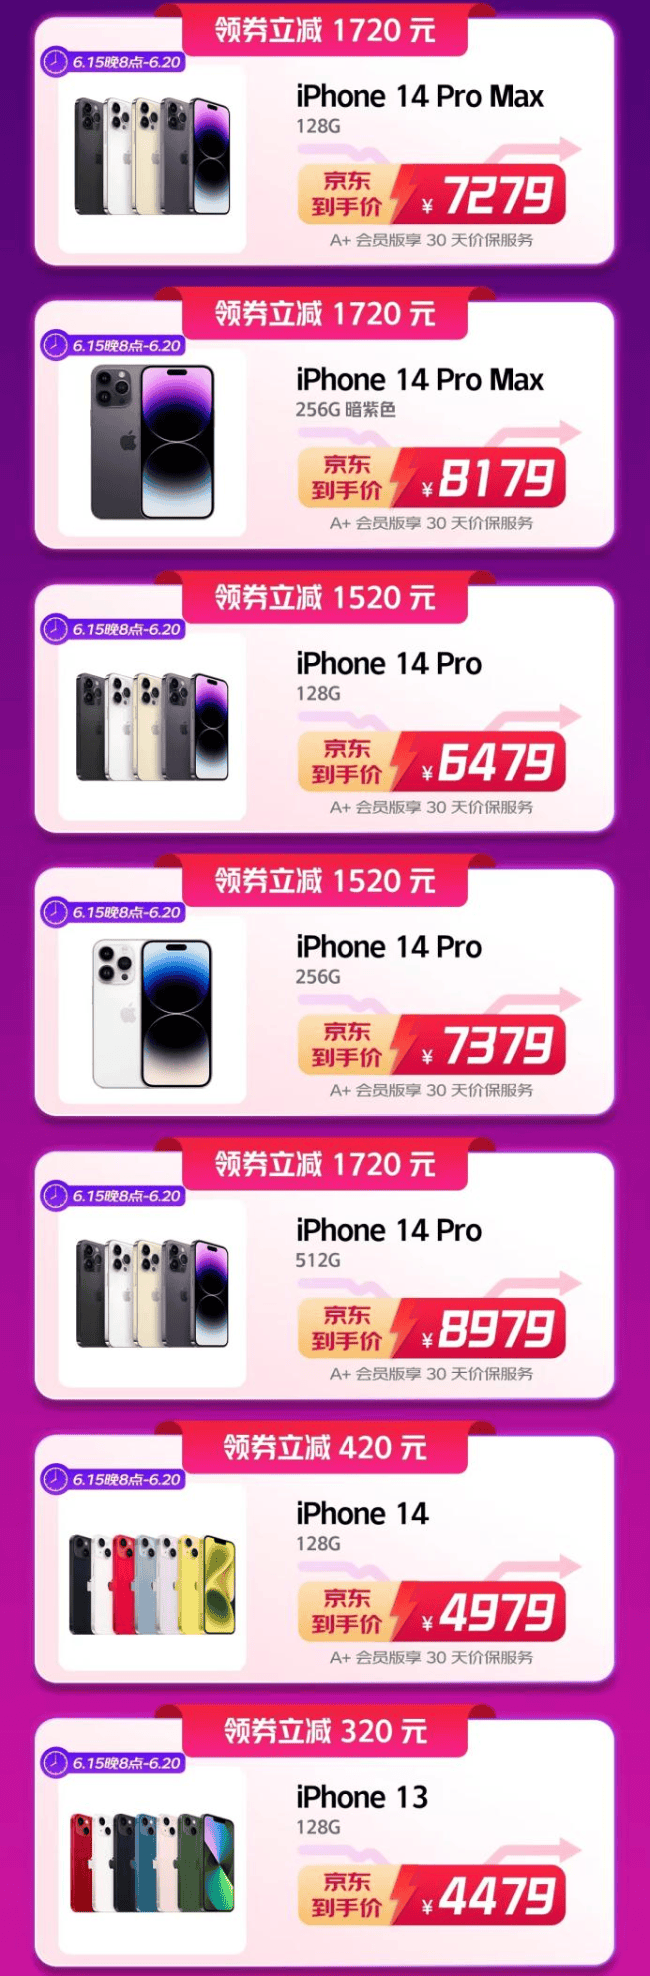 今晚8点京东618高潮开启 iPhone 14 Pro系列领券至高立减1920元